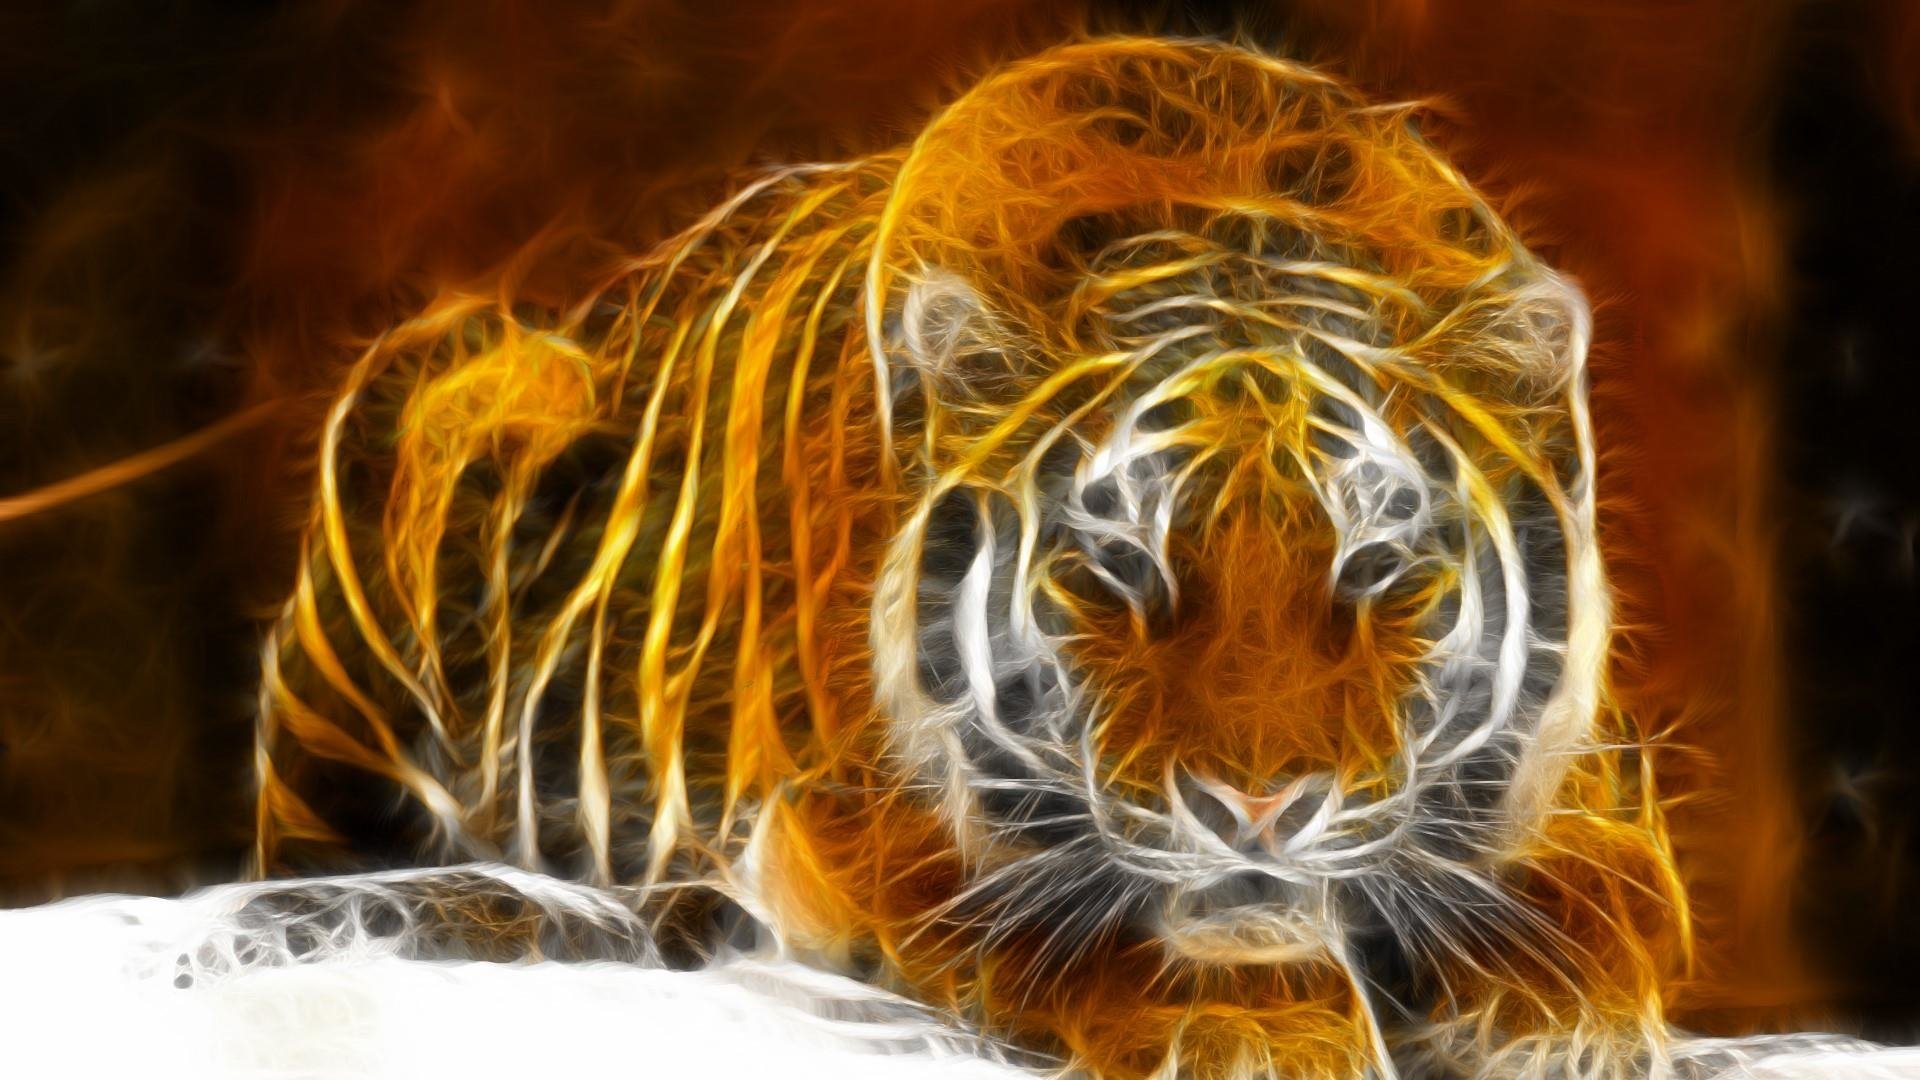 Tiger Art - ID: 90774